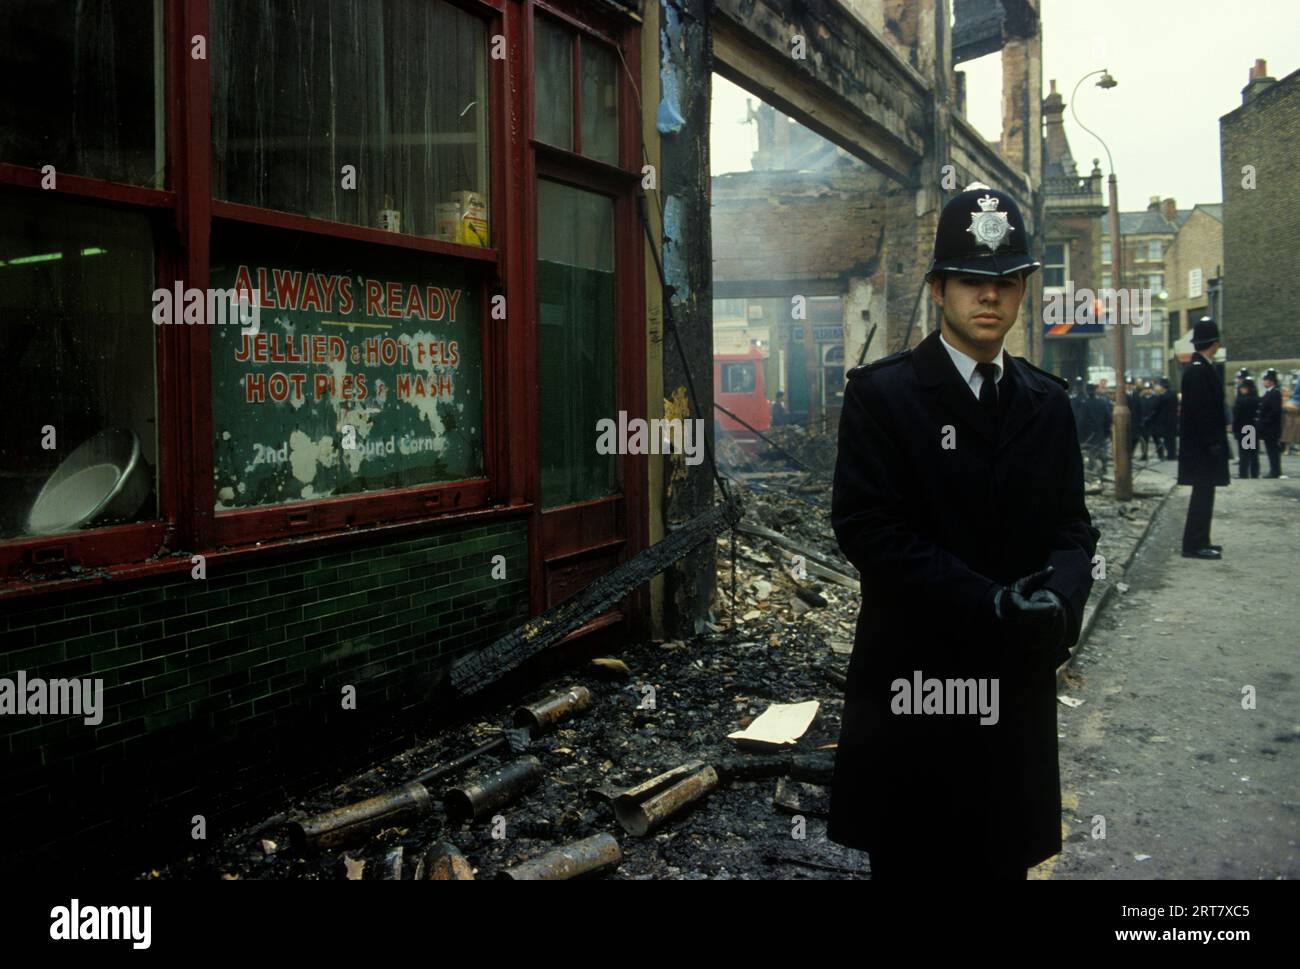 Émeutes de Brixton. South London UK avril 1981. Le lendemain de la police en service pour protéger les magasins pillés contre d'autres pillages. Années 1980 Angleterre HOMER SYKES. Banque D'Images